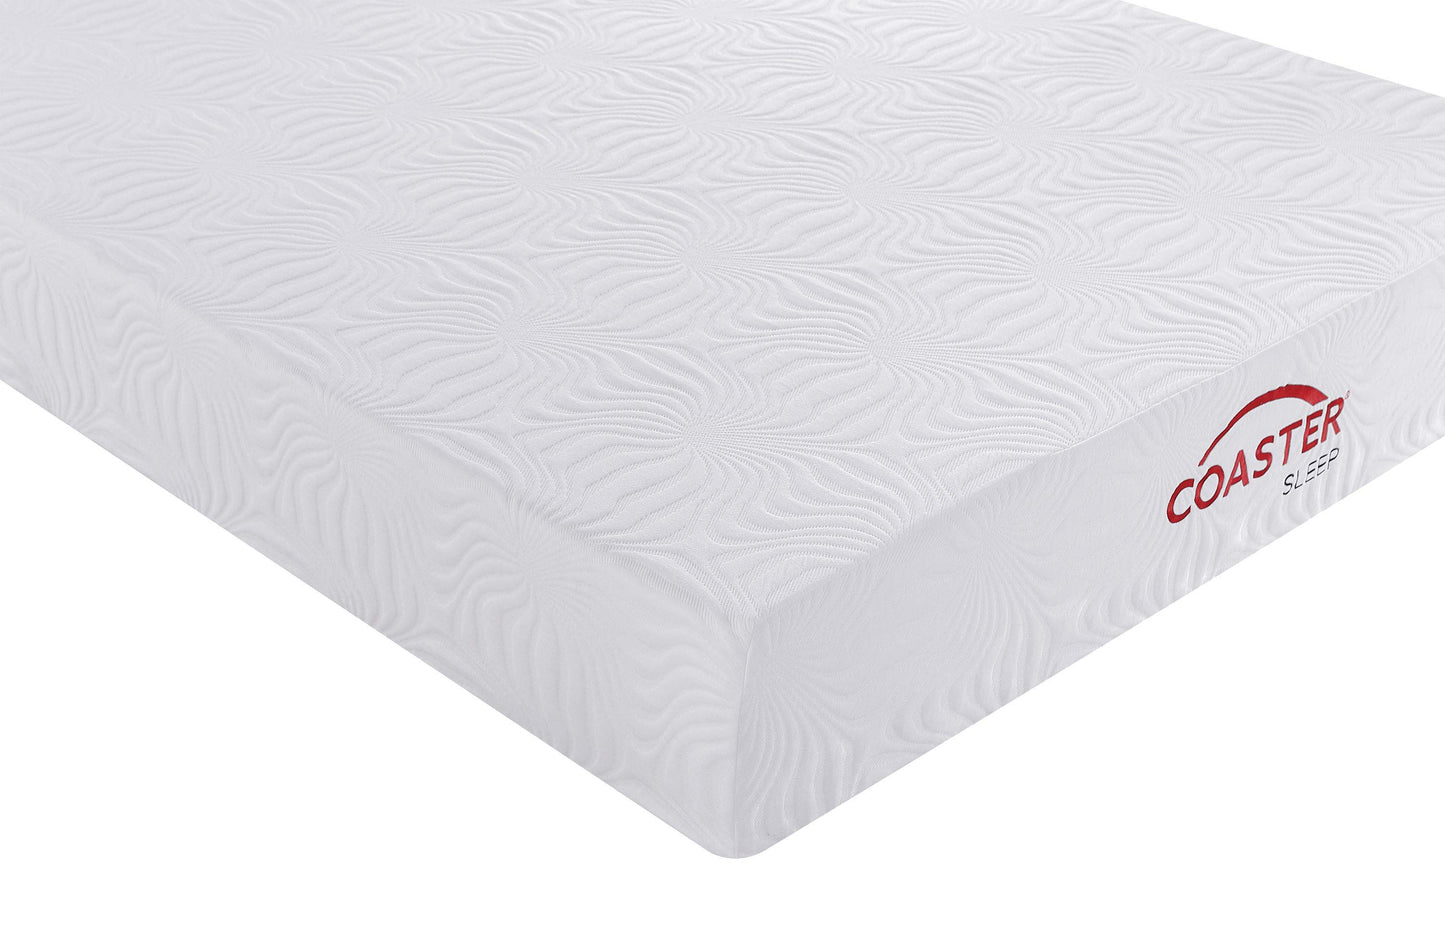 10" twin extra long memory foam mattress